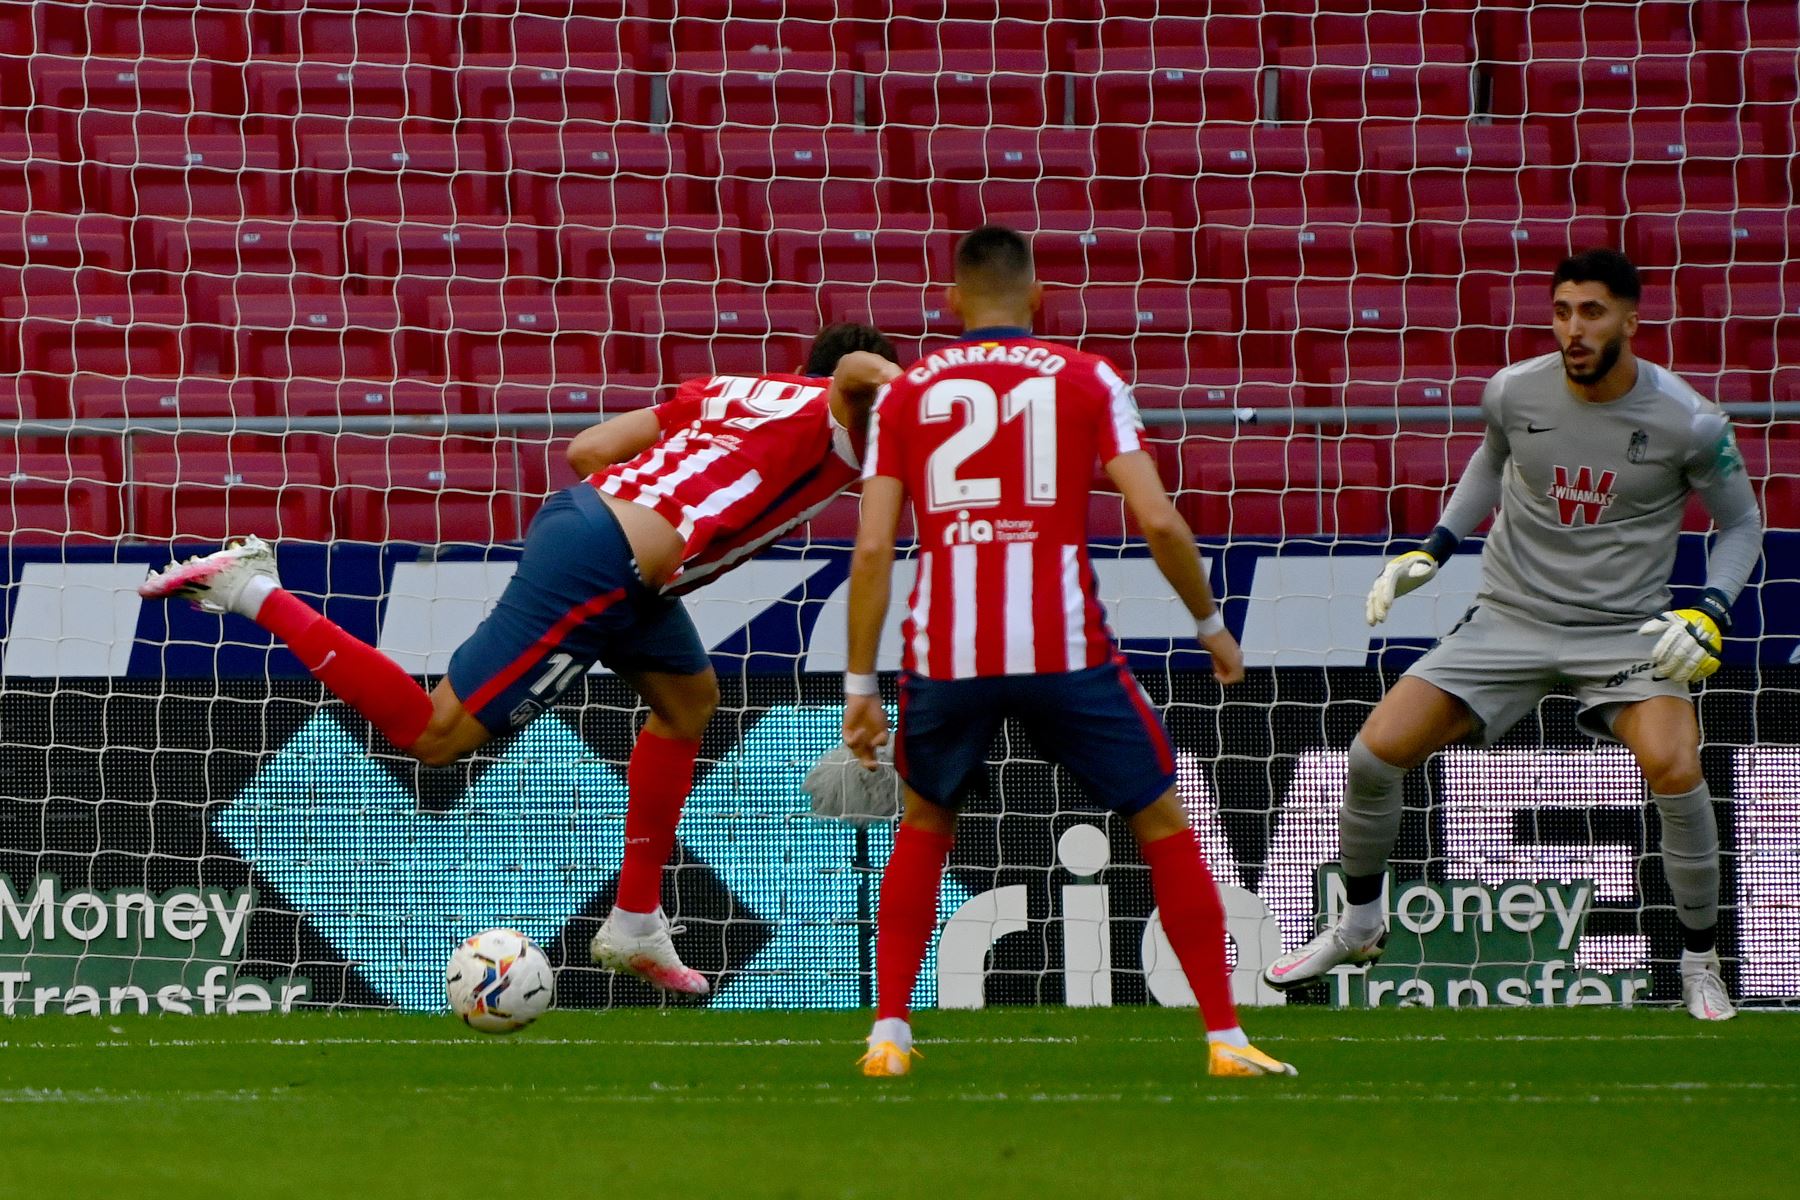 El delantero español del Atlético de Madrid, Diego Costa, marca un gol durante el partido de fútbol de la liga española Club Atlético de Madrid contra Granada FC. Foto: AFP